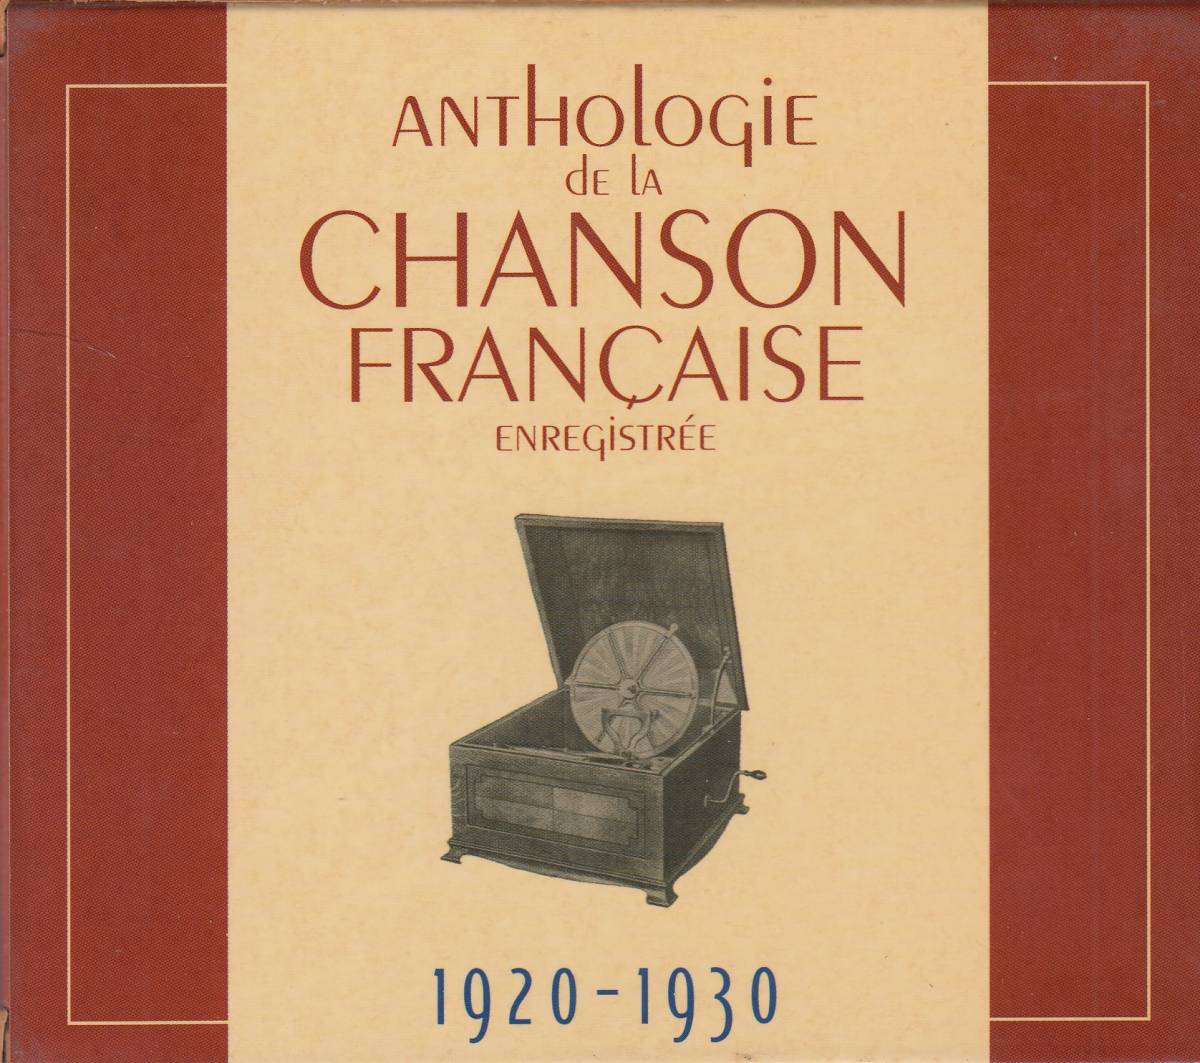  транспорт VA / Anthologie De La Chanson Franaise Enregistre - 1920-1930 10CD* стандарт номер #1989702-A/B* бесплатная доставка # быстрое решение * переговоры иметь 